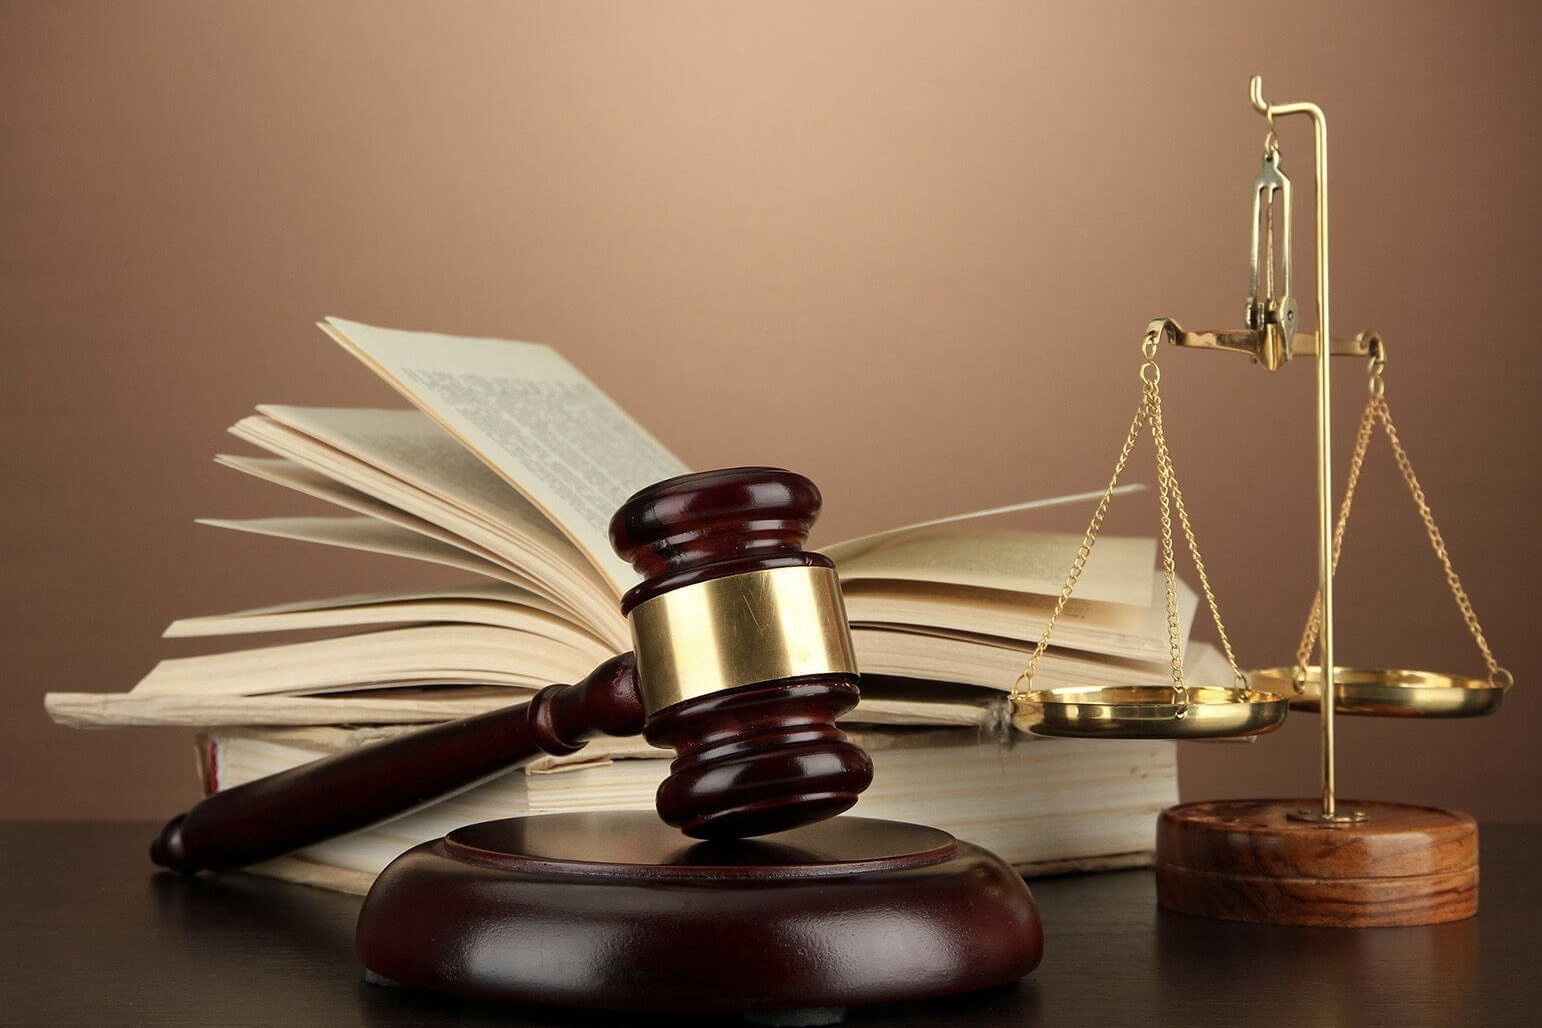 کیفرخواست پرونده سها رضانژاد در دادسرای کردکوی صادر شد